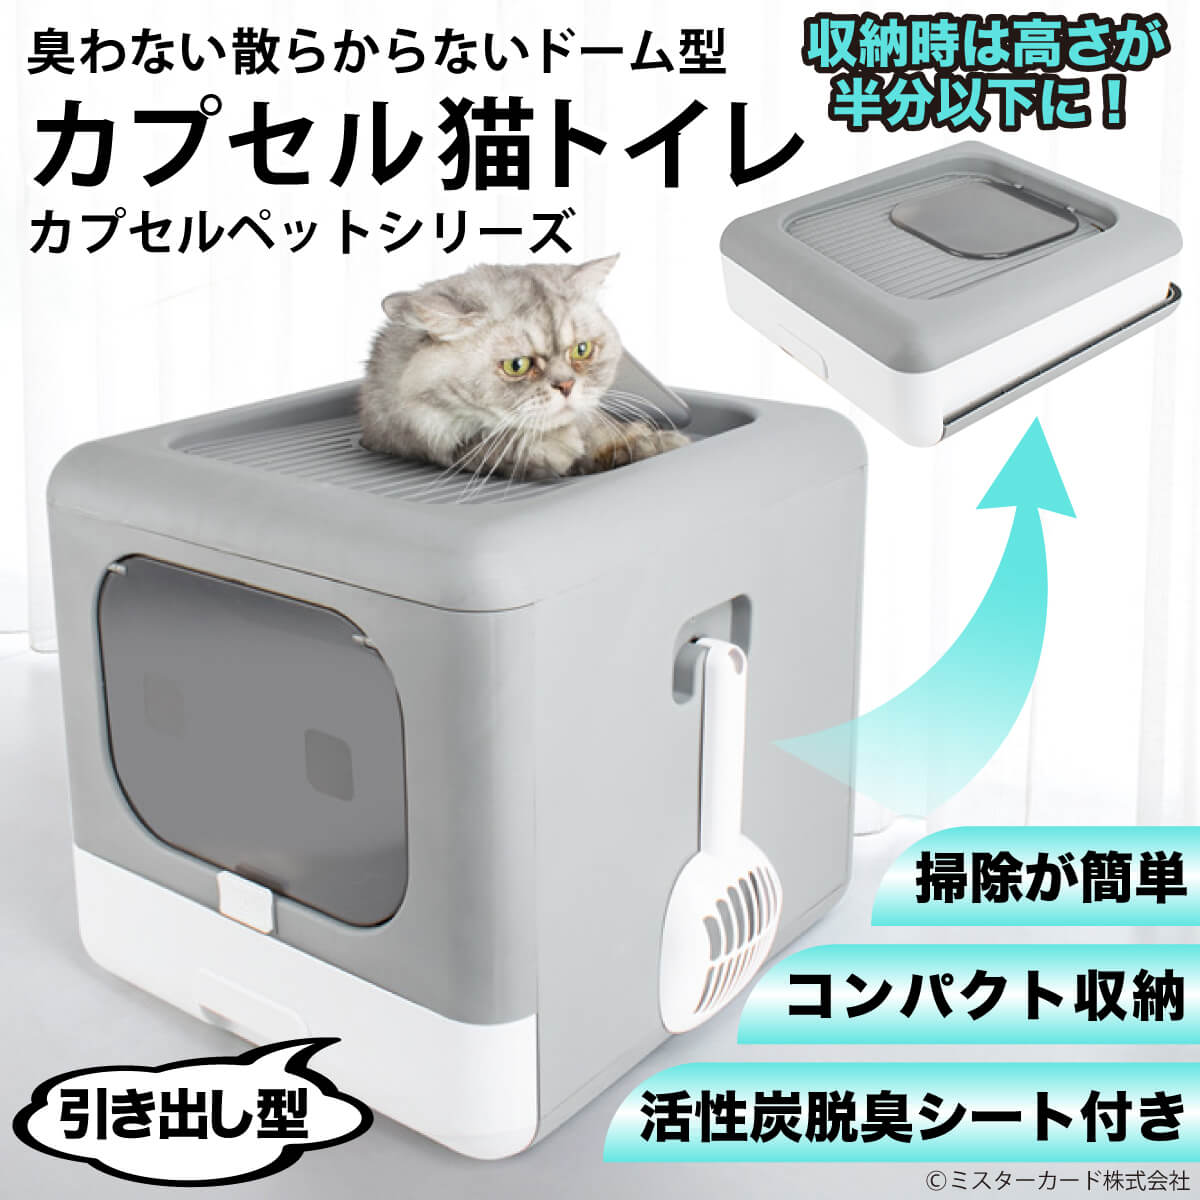 ドーム型「カプセル猫トイレ」 | miraiON